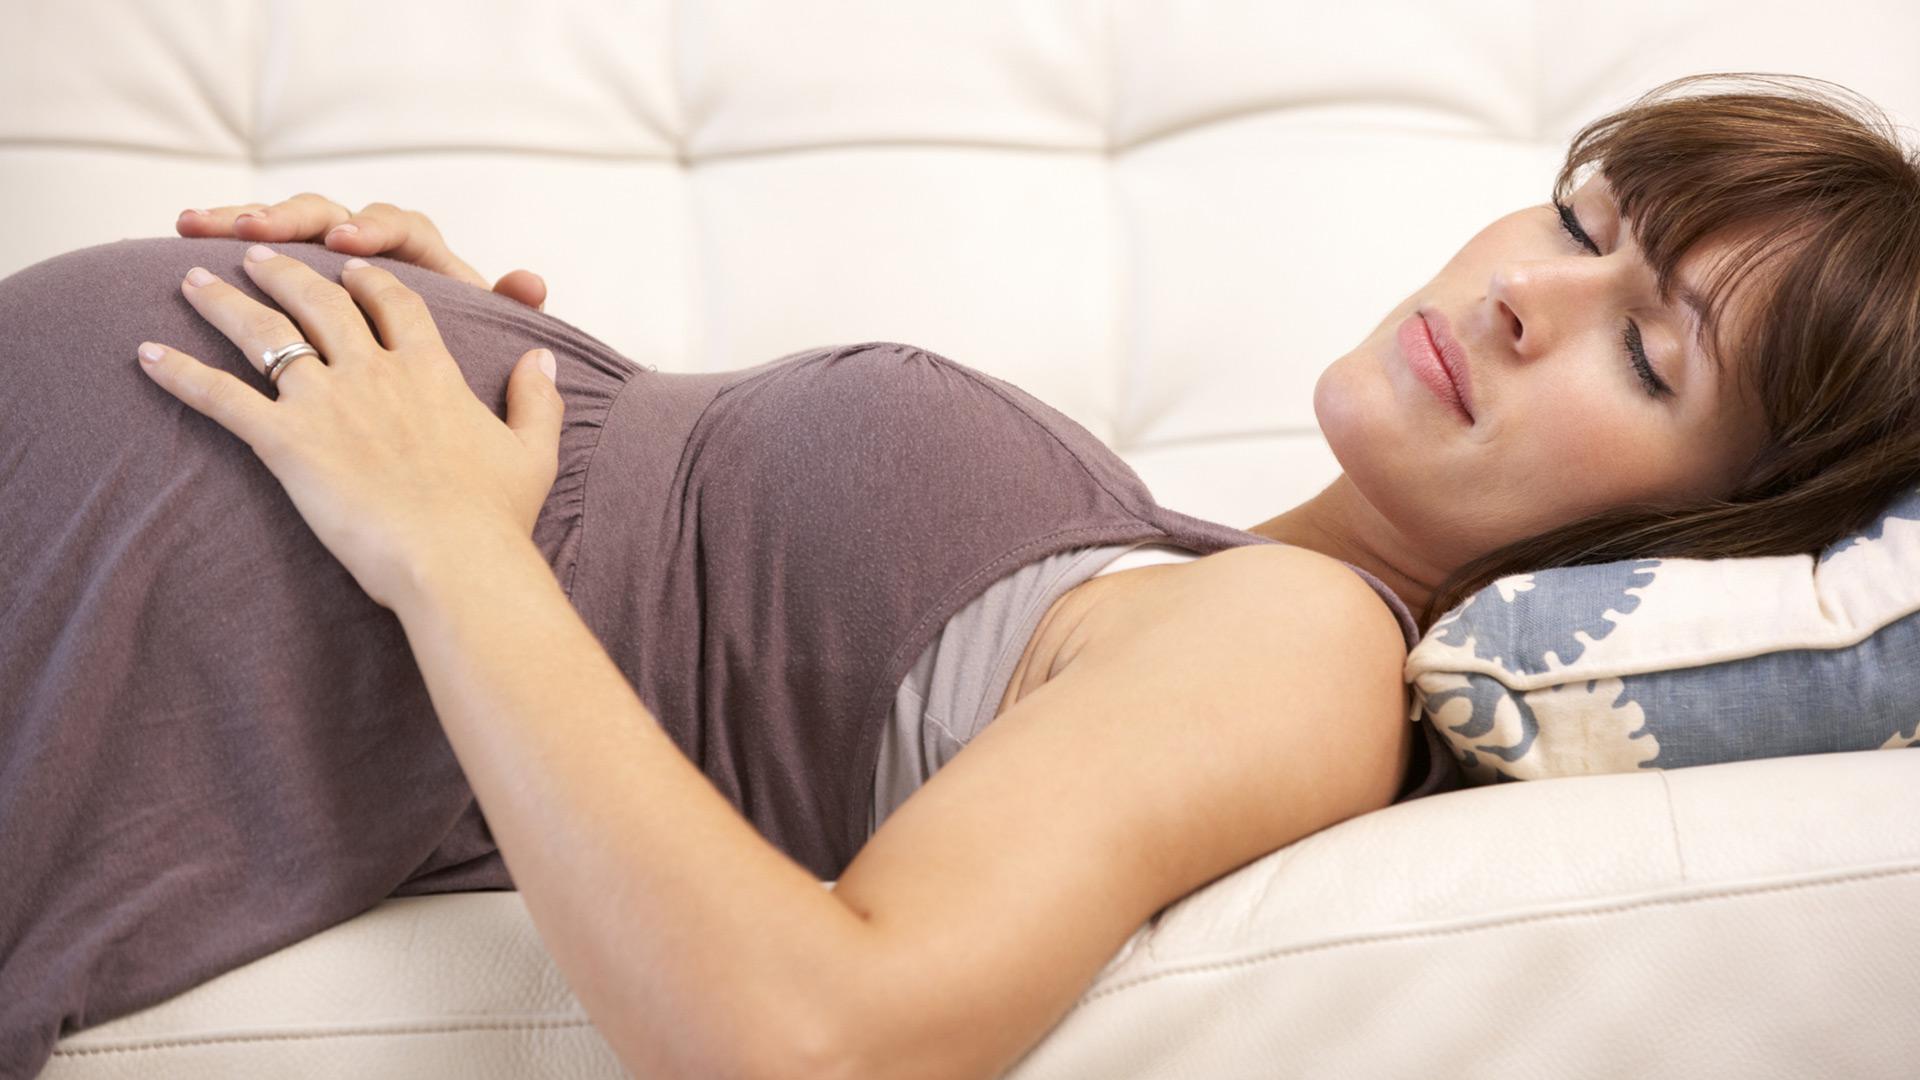 Врачи бьют тревогу: почему спать на спине беременным - опасно?